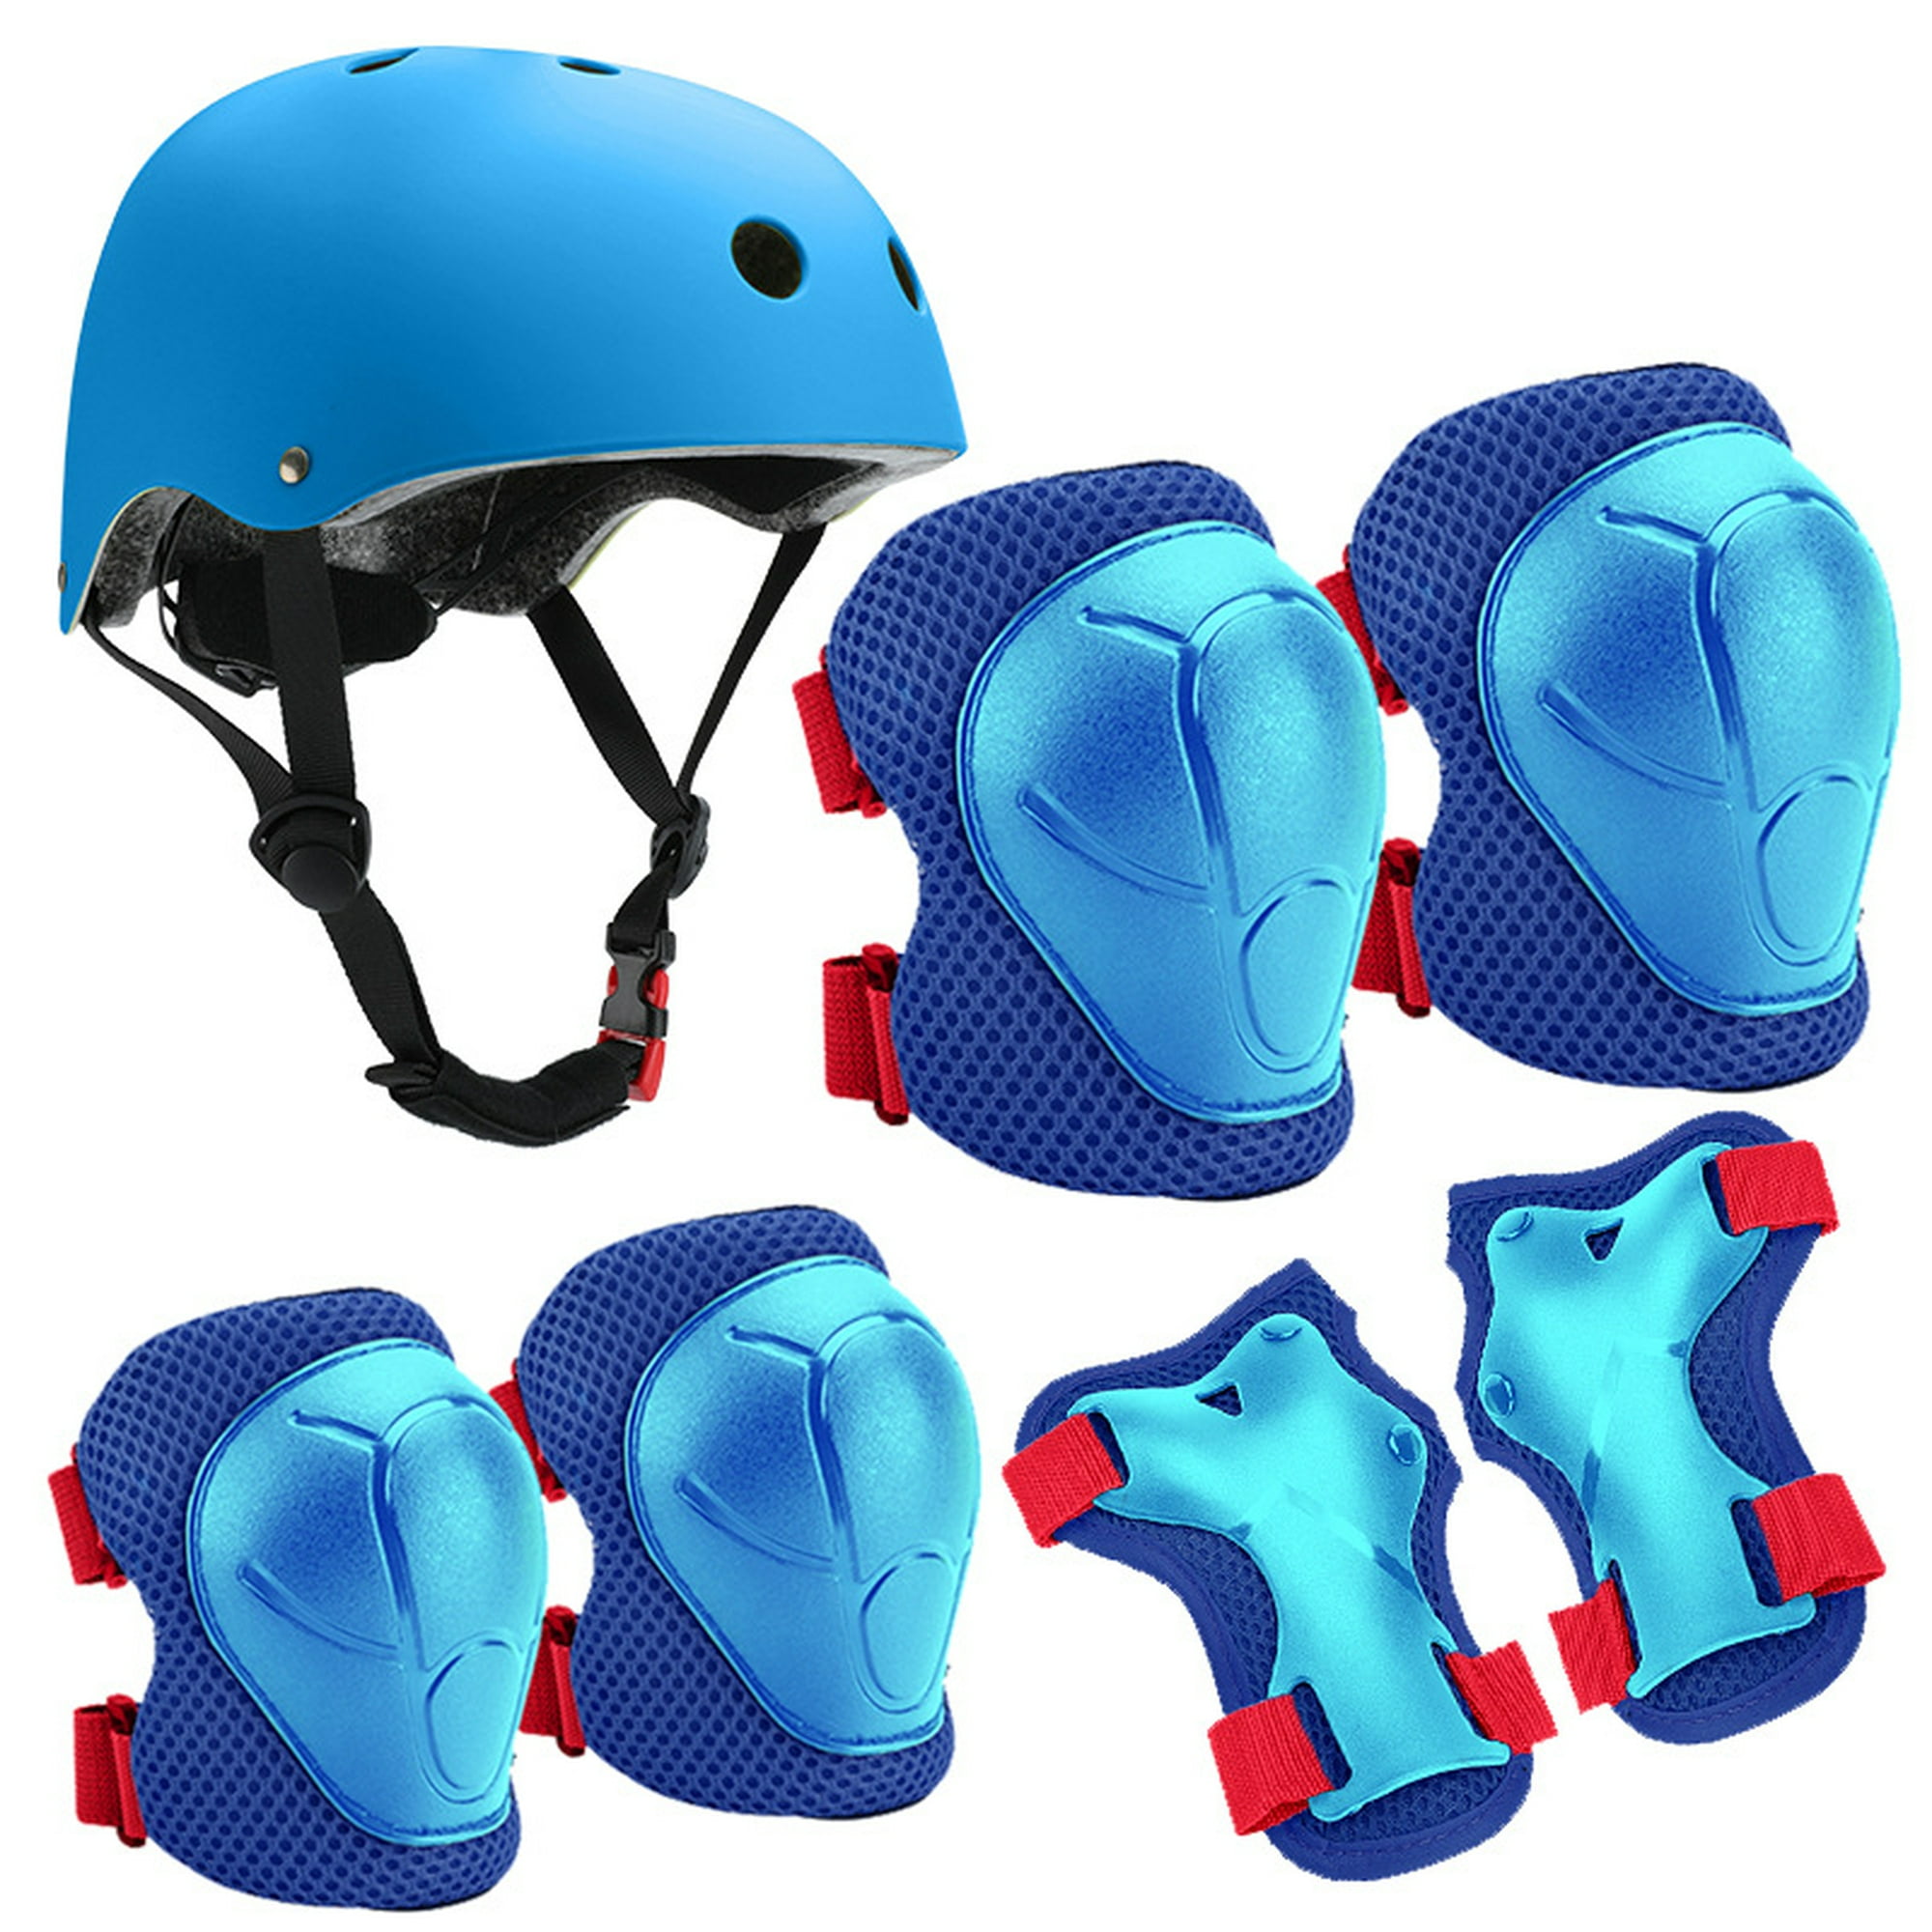 Kit Casco Protección Niños Bicicleta Eo Safe Imports Esi-5756 Color Azul